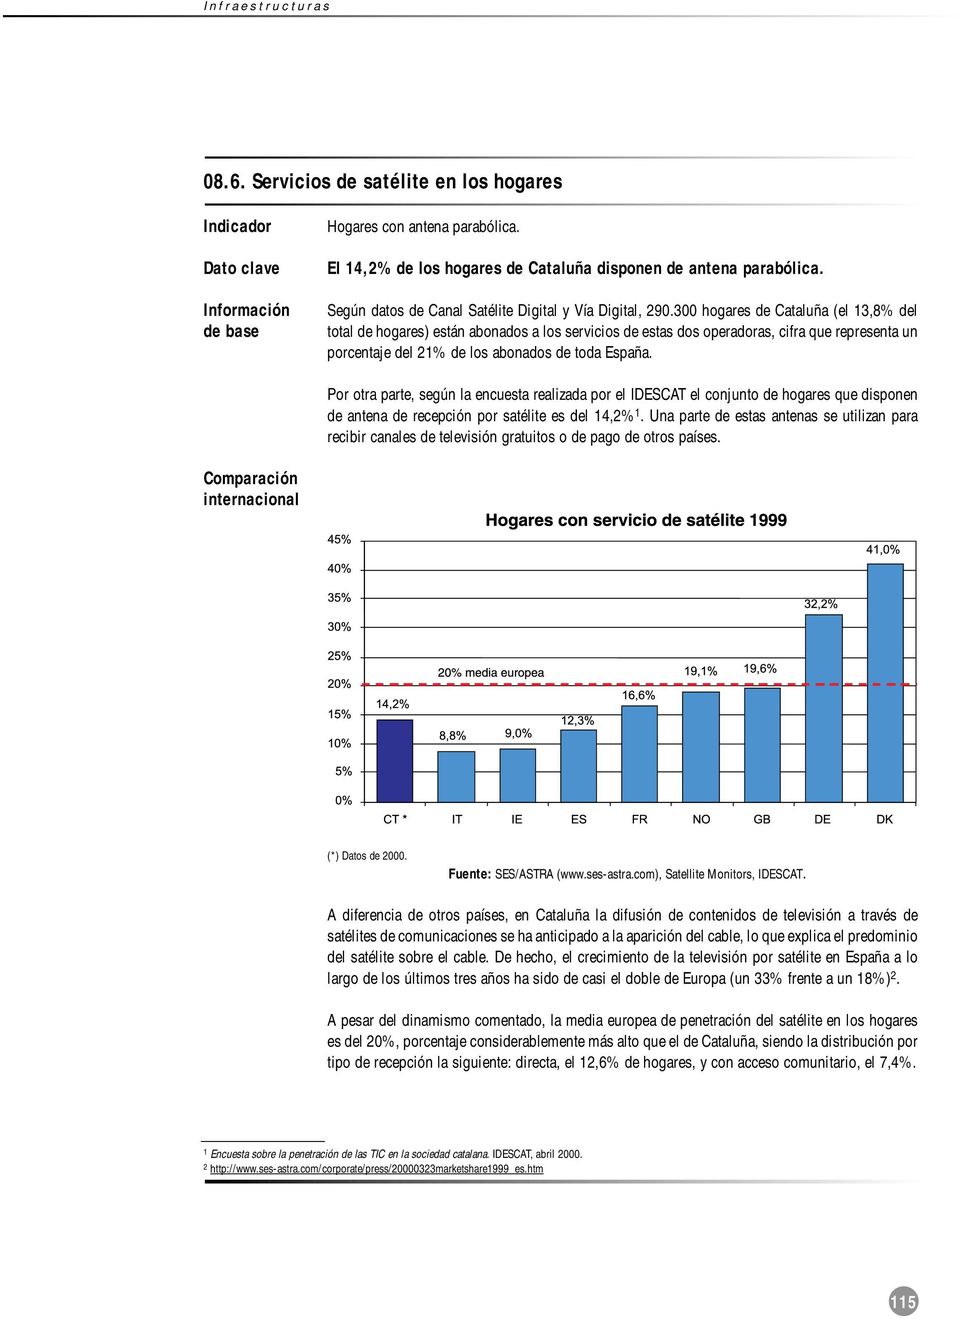 300 hogares de Cataluña (el 13,8% del total de hogares) están abonados a los servicios de estas dos operadoras, cifra que representa un porcentaje del 21% de los abonados de toda España.